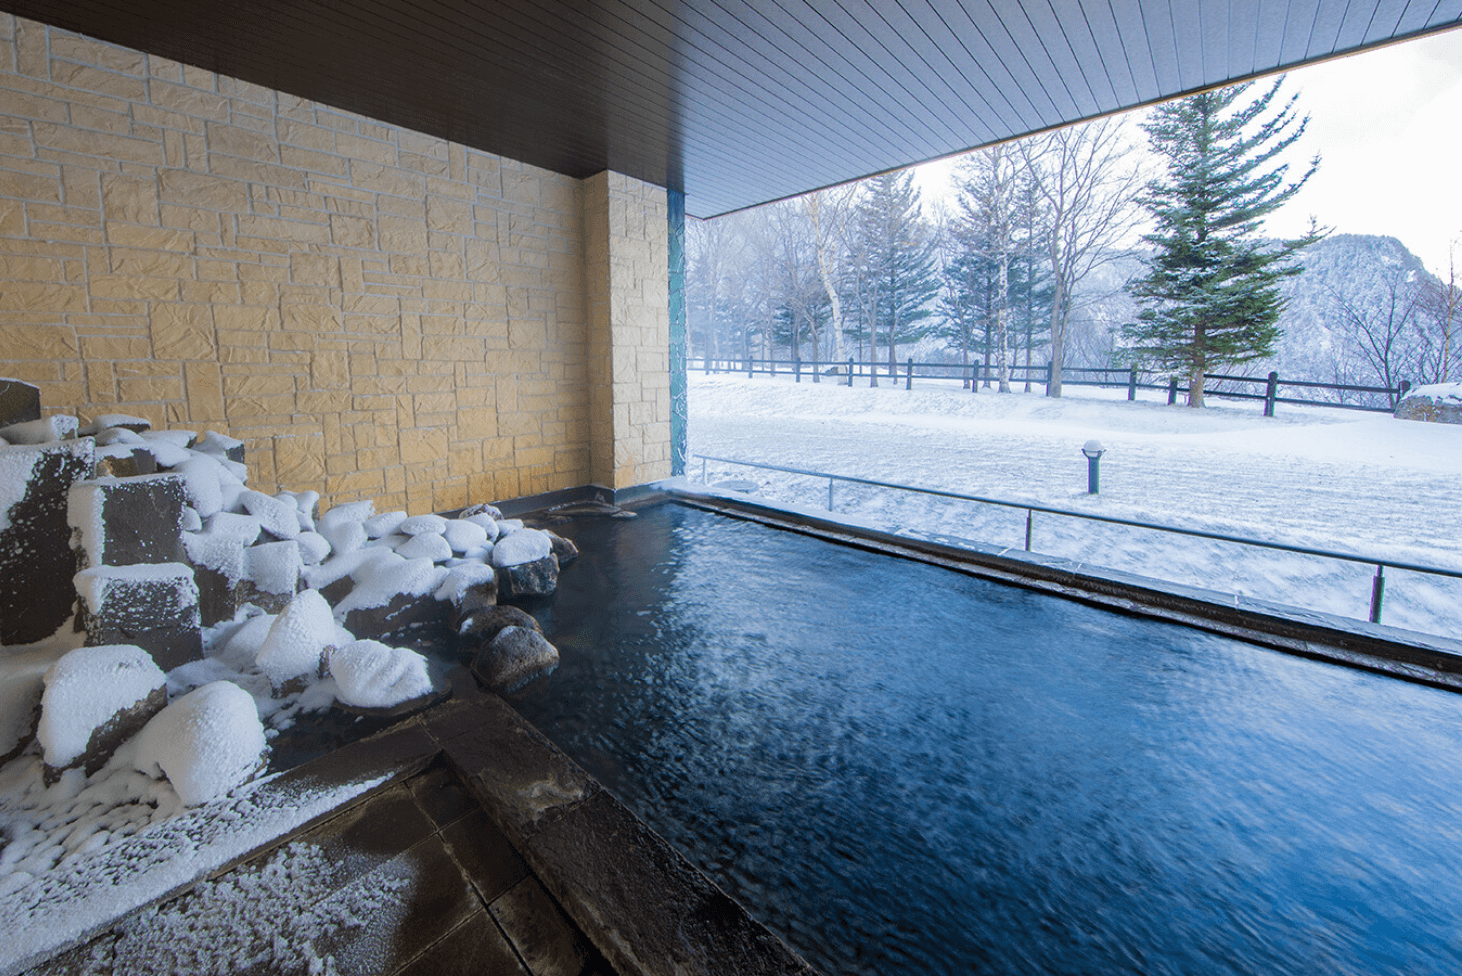 雪化粧した絶景を楽しみながら、体の芯まで温まる温泉は格別です。